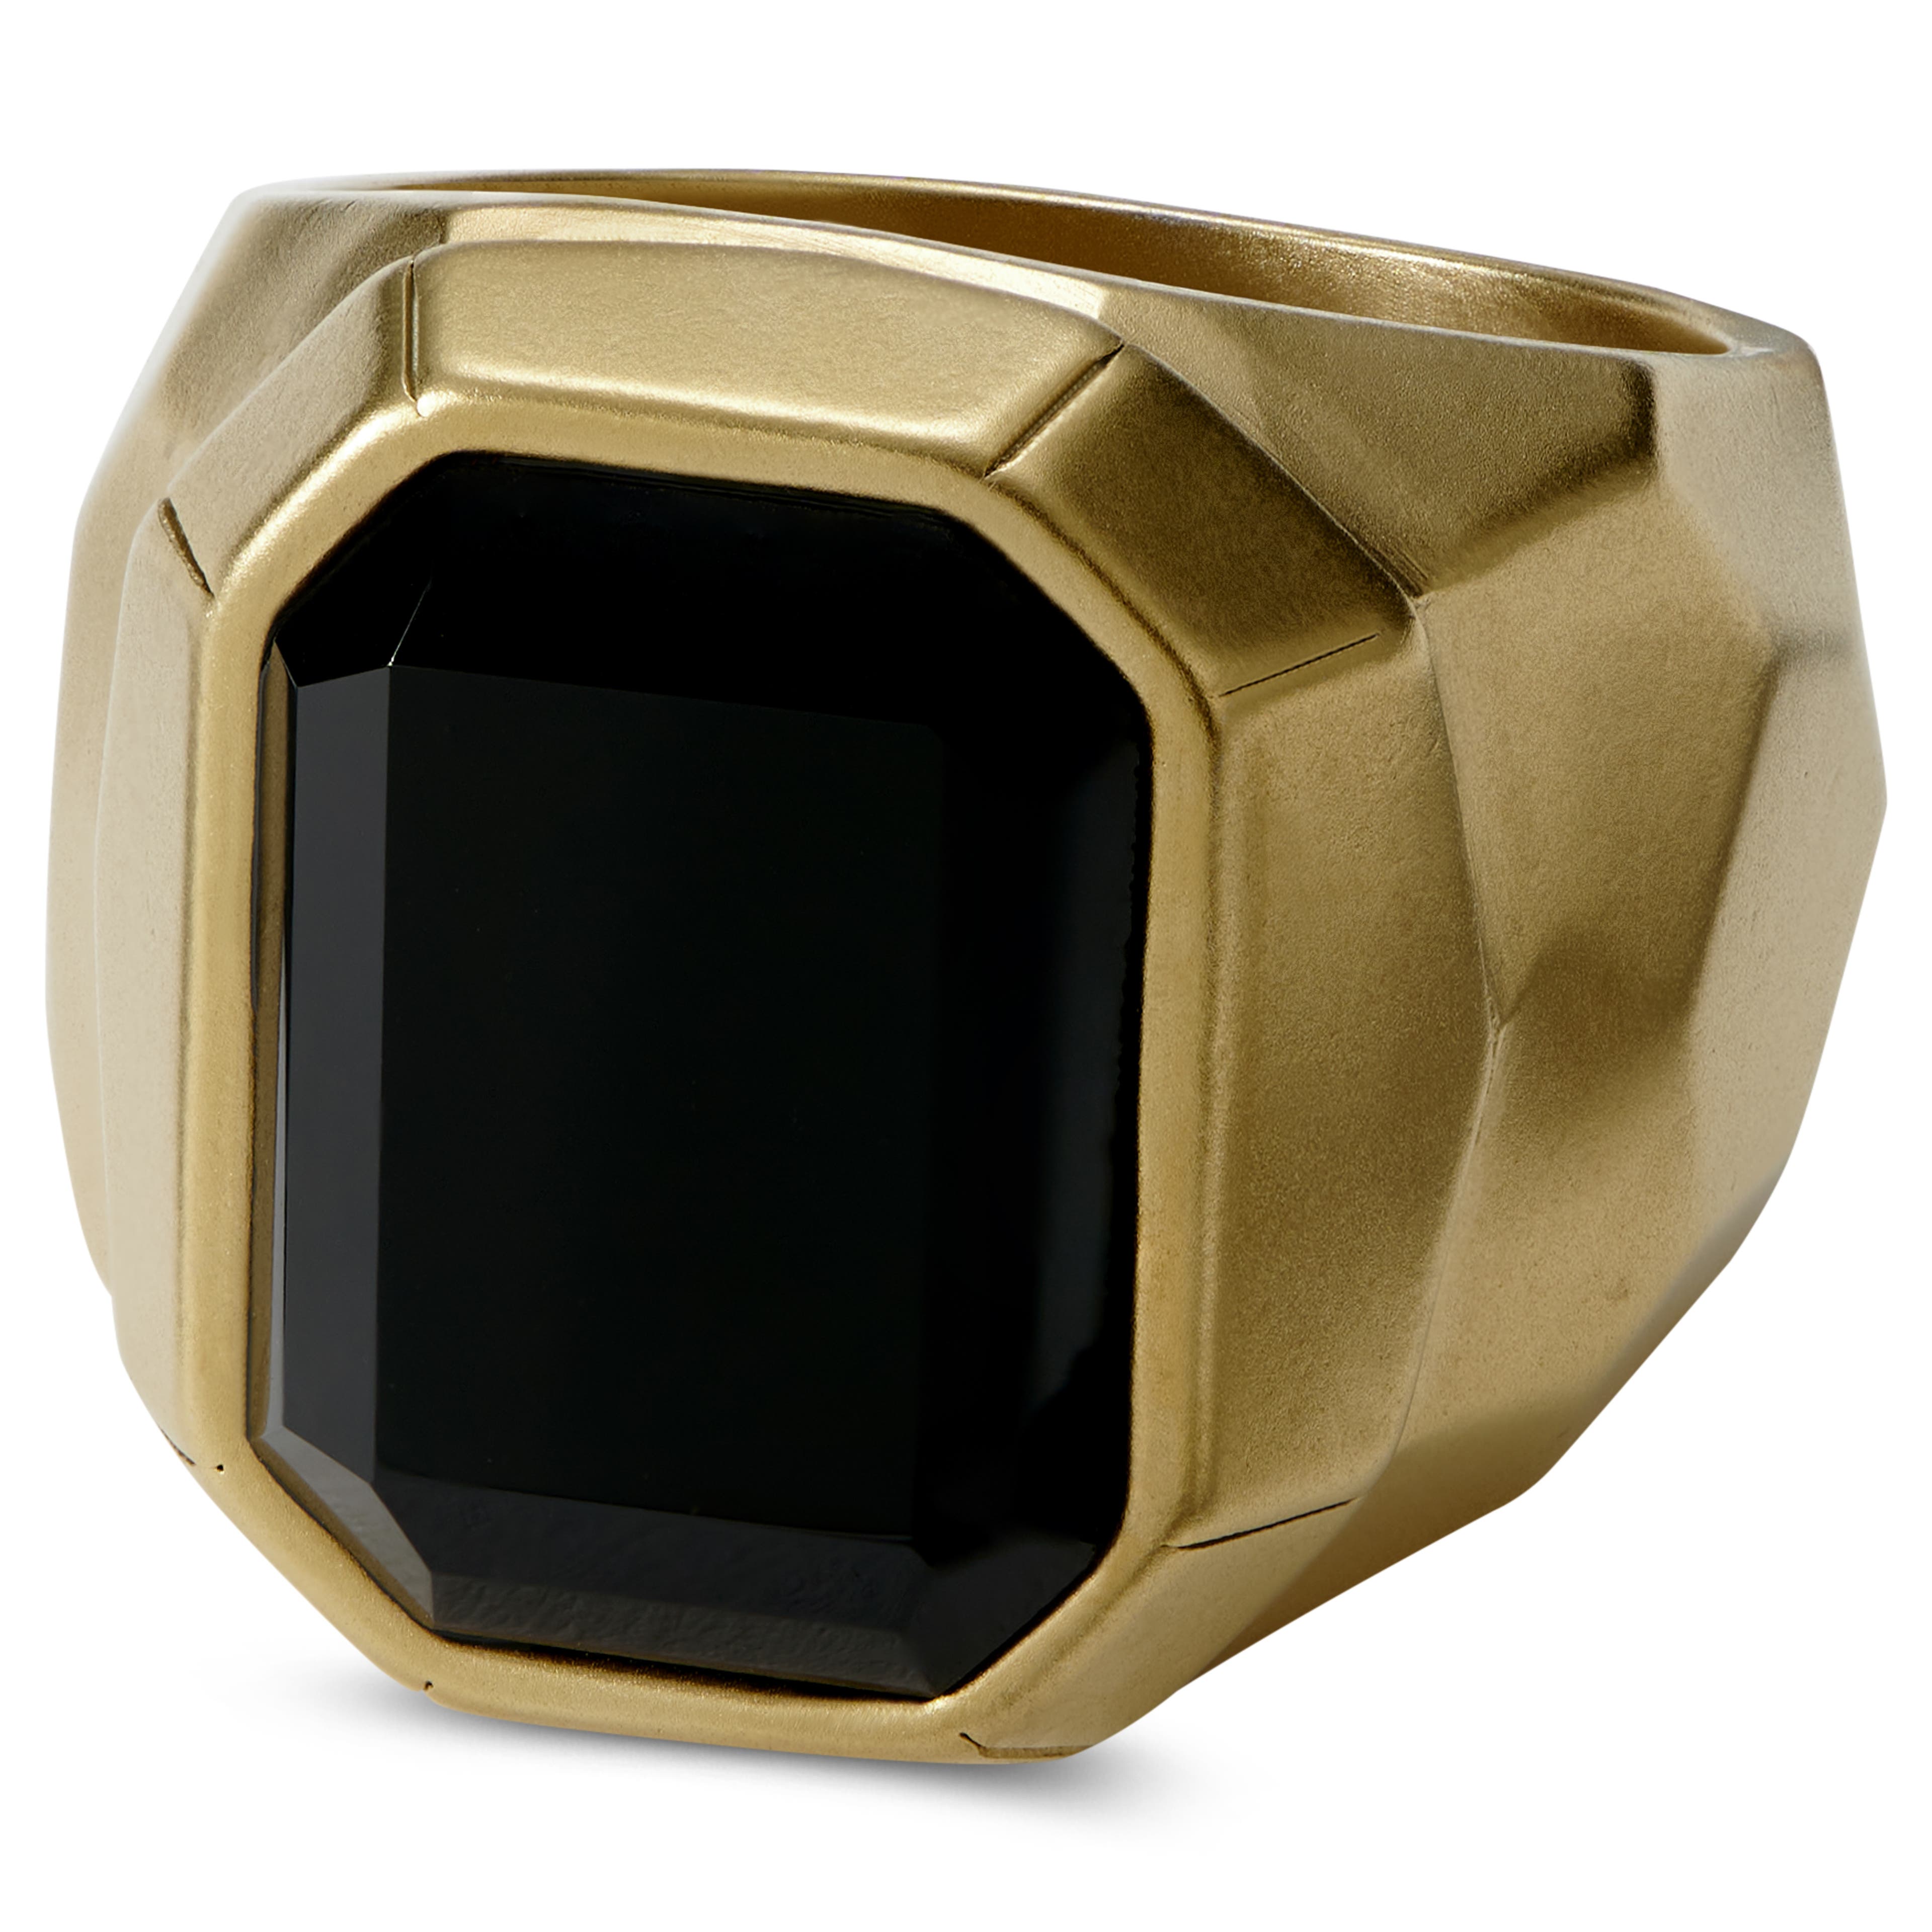 Jax ocelový pečetní prsten s černým kamenem zlaté barvy 